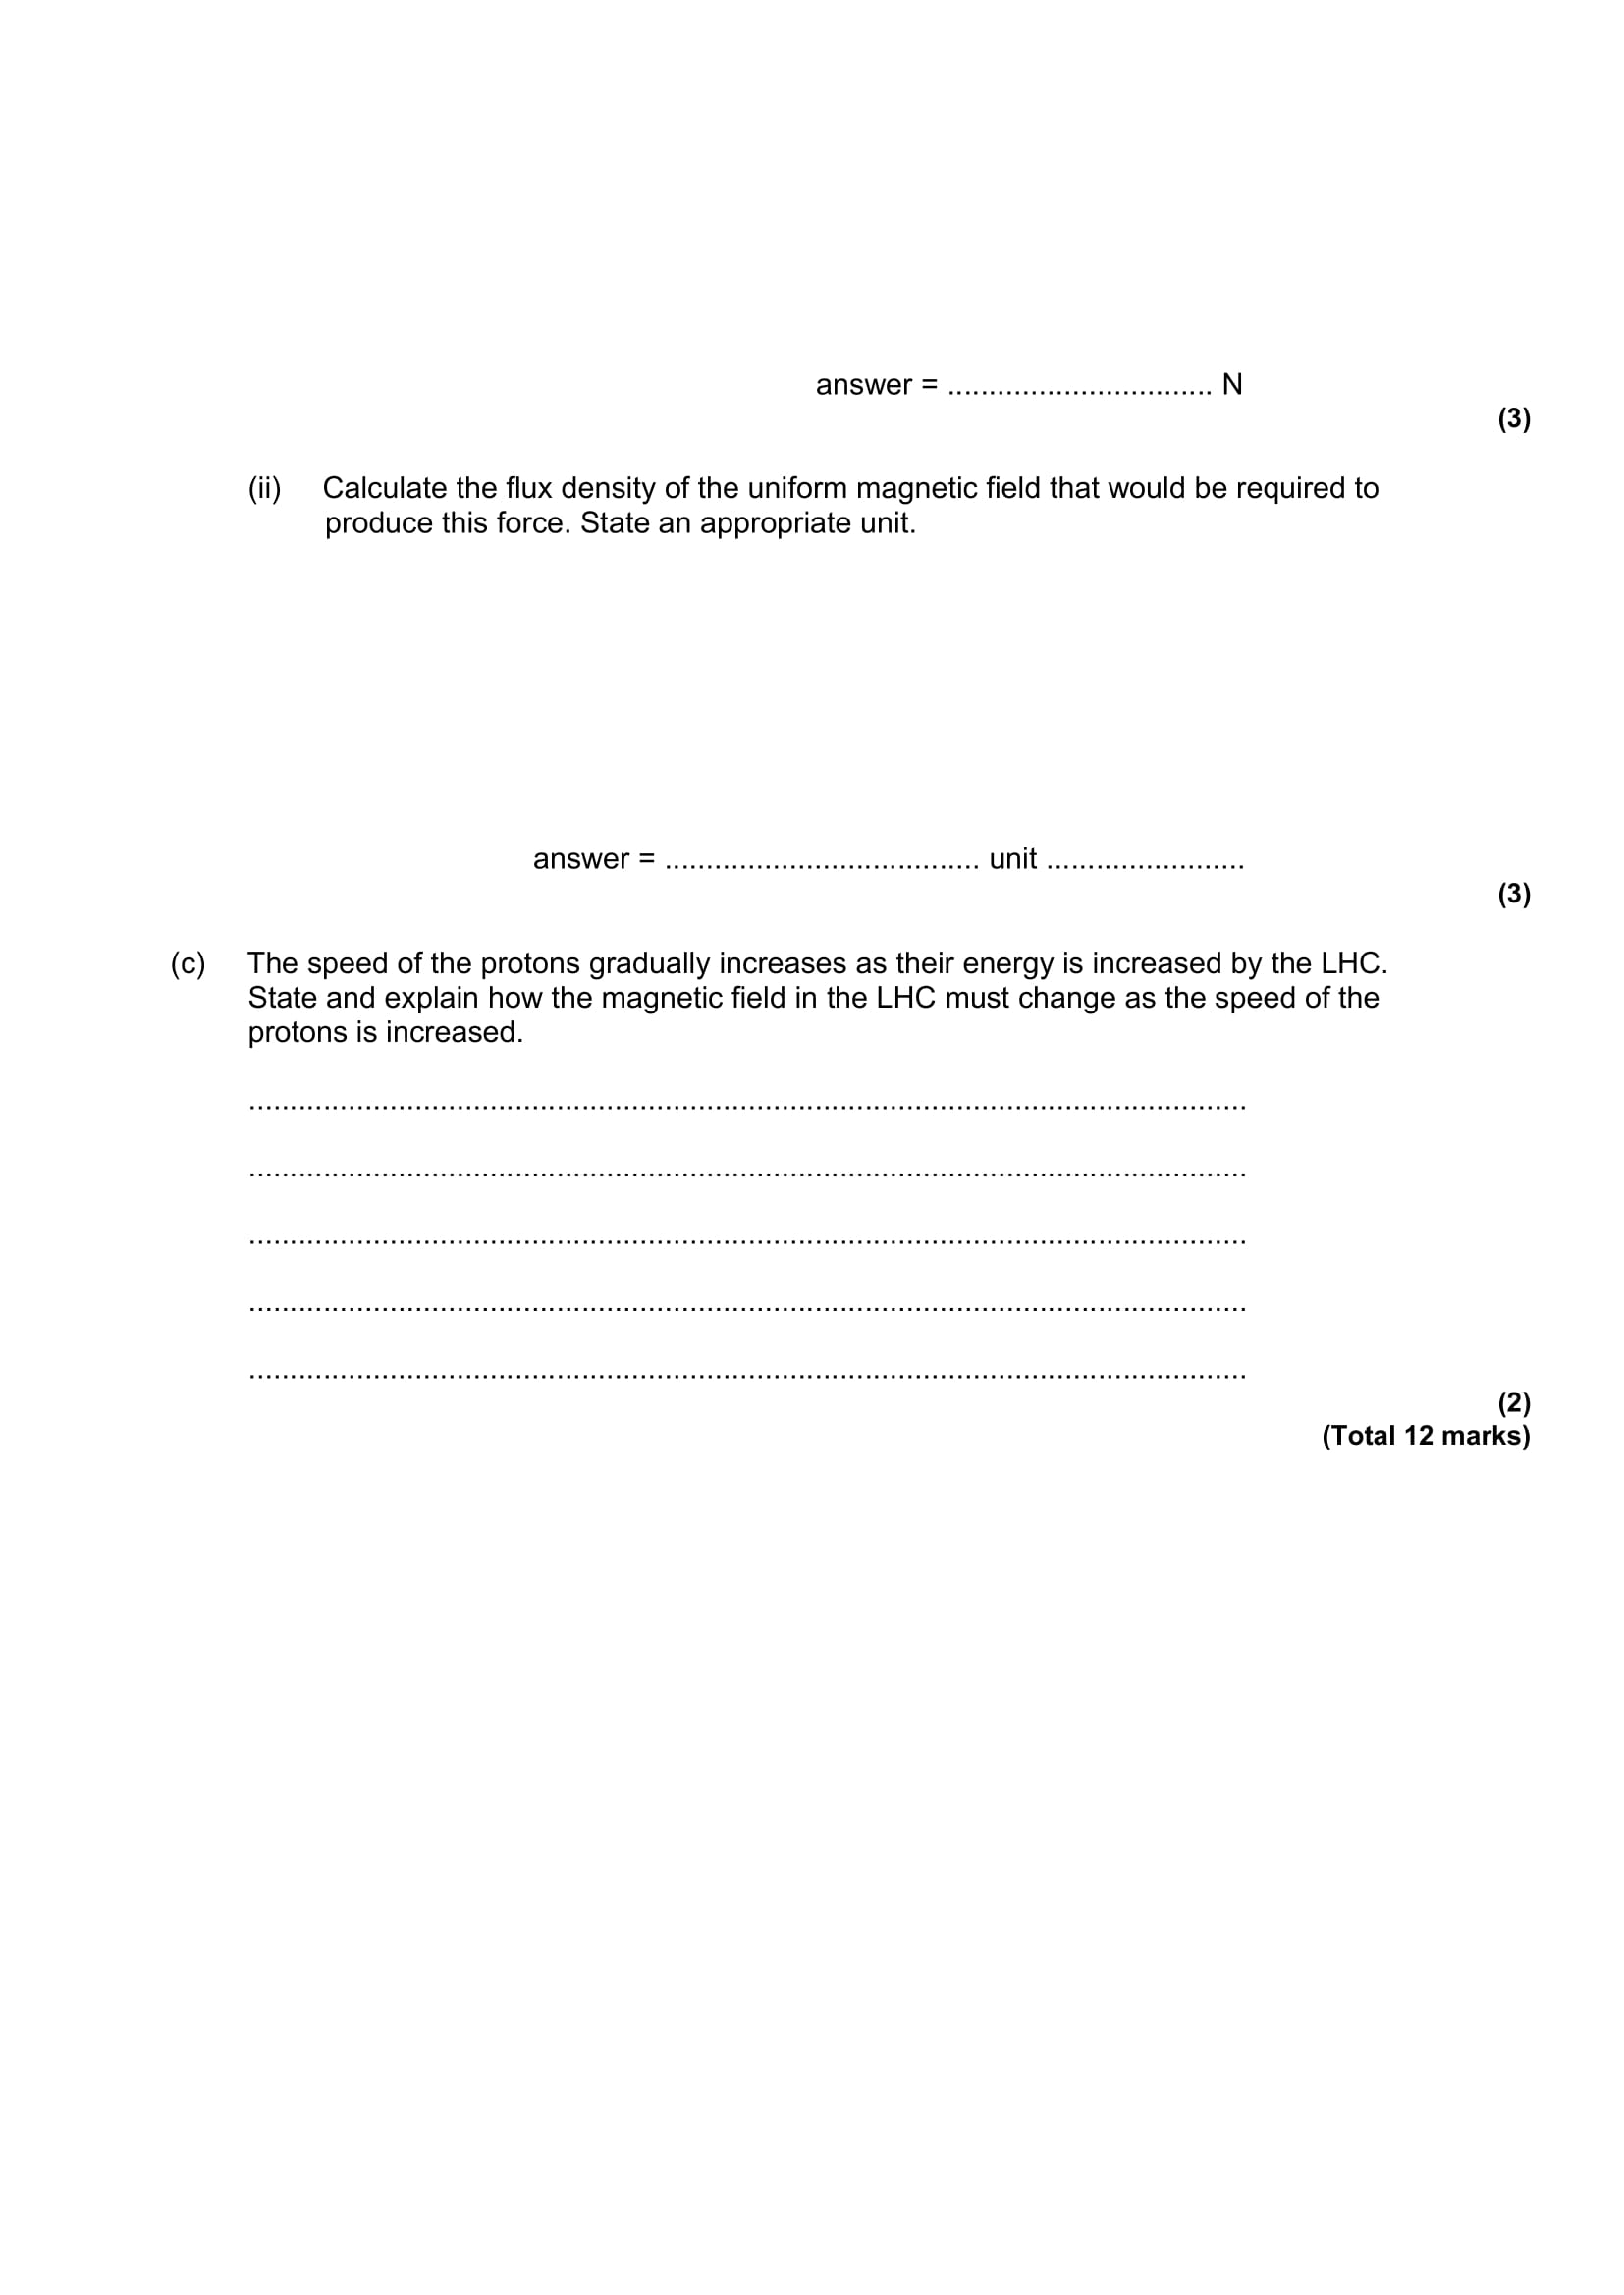 A2 Intensive revision SHM Circular - LONG QUESTIONS - QUESTIONS-9